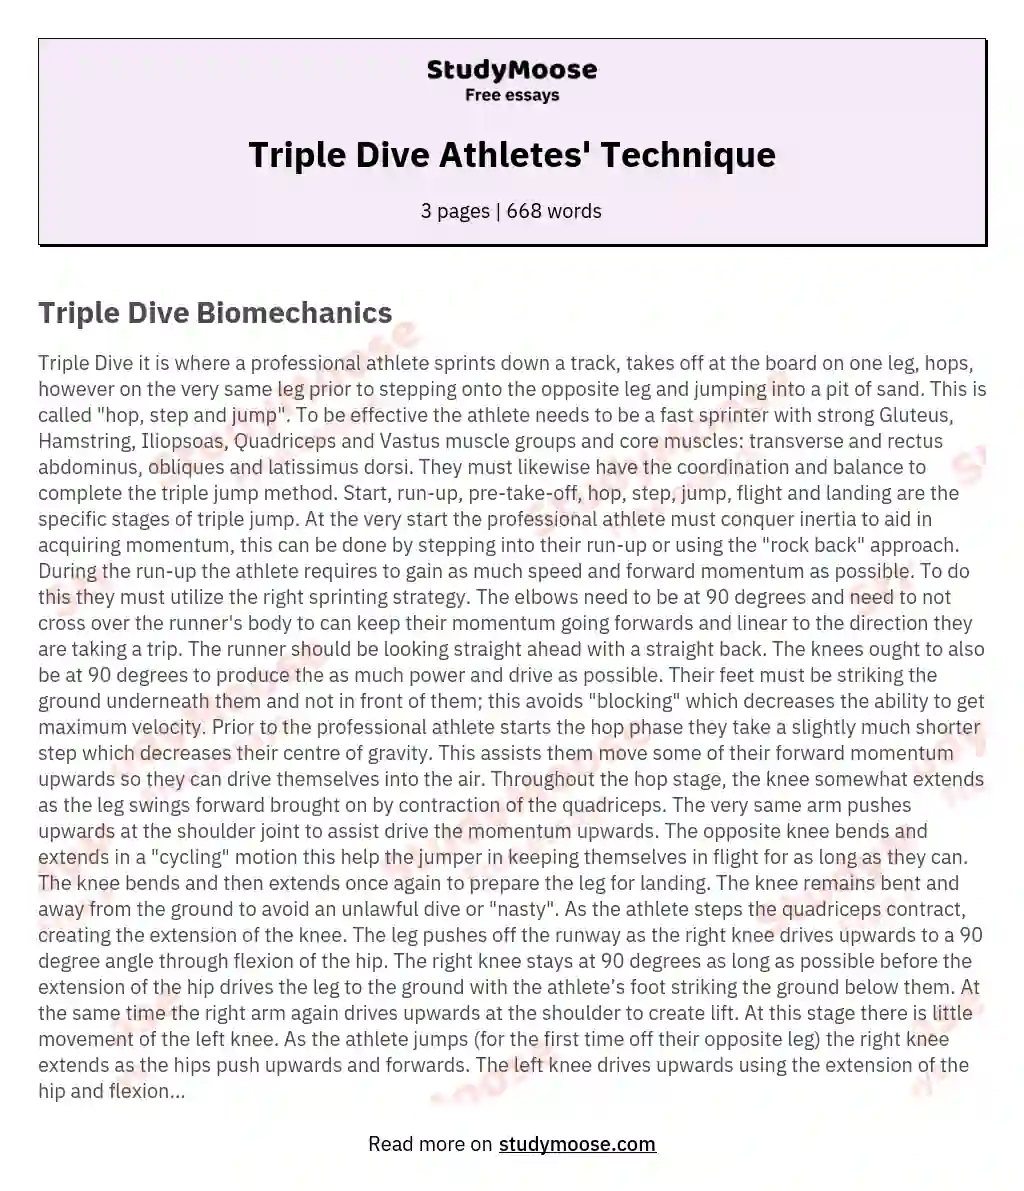 Triple Dive Athletes' Technique essay